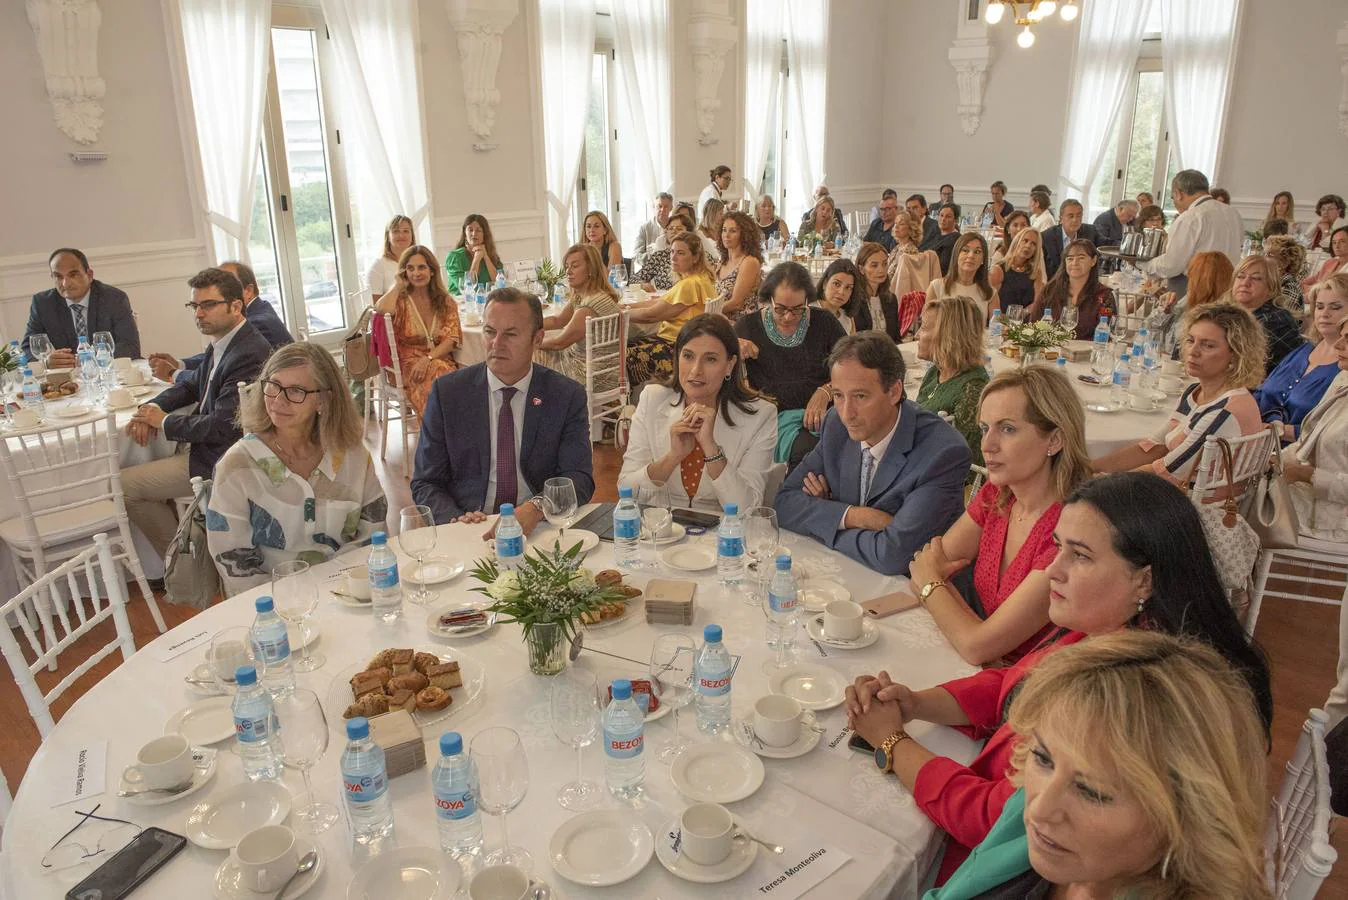 La vicepresidenta del Banco Santander España, Isabel Tocino, ha ofrecido la conferencia inaugural del I Encuentro Económico Empresarial organizado por la Asociación de Mujeres Empresarias de Cantabria, en el Casino del Sardinero.